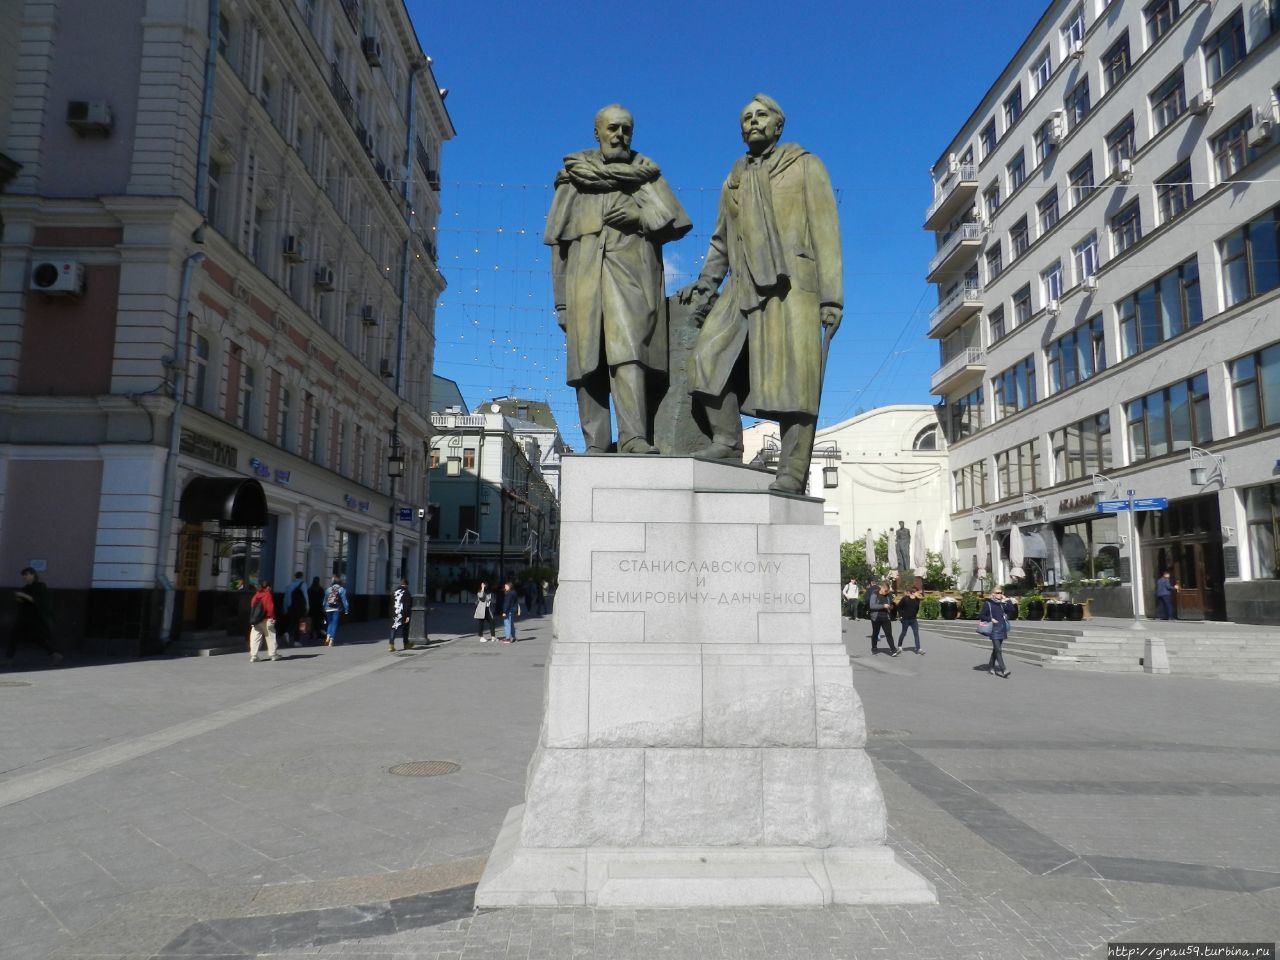 Памятник Станиславскому и Немировичу-Данченко / Monument to Stanislavsky and Nemirovich-Danchenko